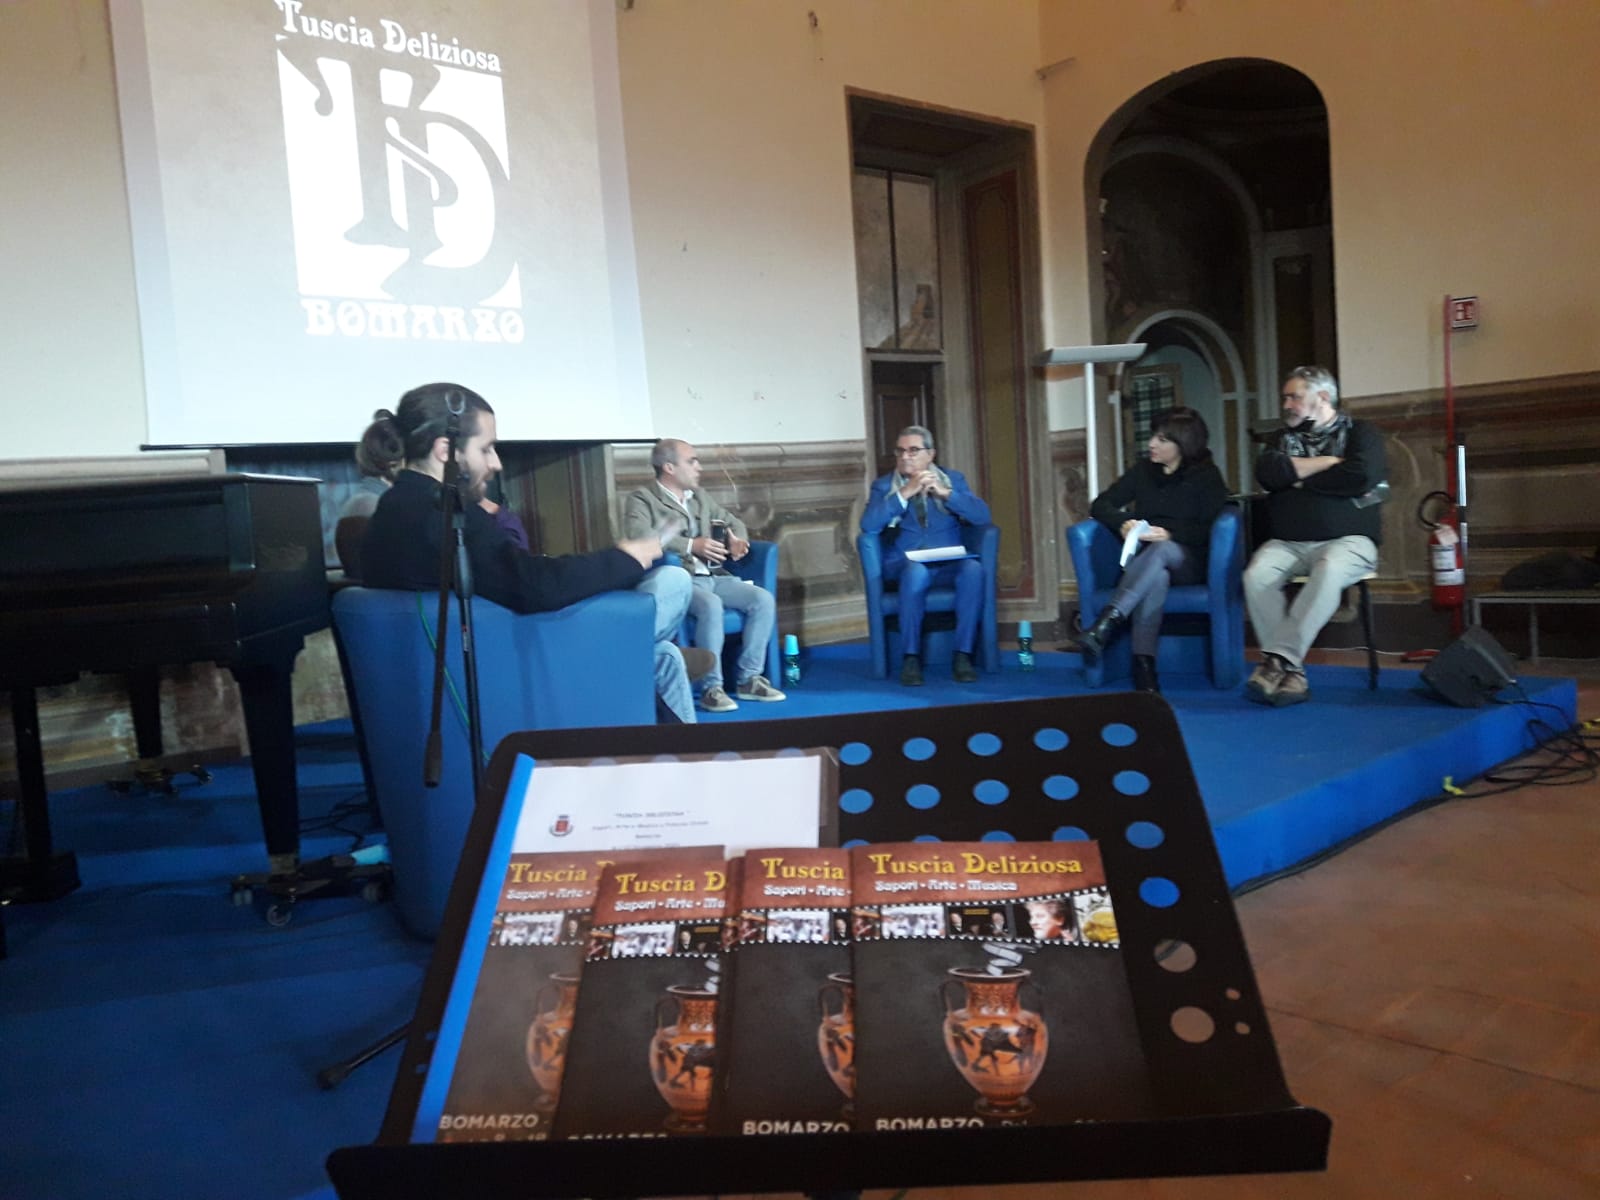 Bomarzo, Tuscia Deliziosa,  Sapori, Arte e Musica a Palazzo Orsini di Bomarzo dall’ 8 al 2 Dicembre 2021